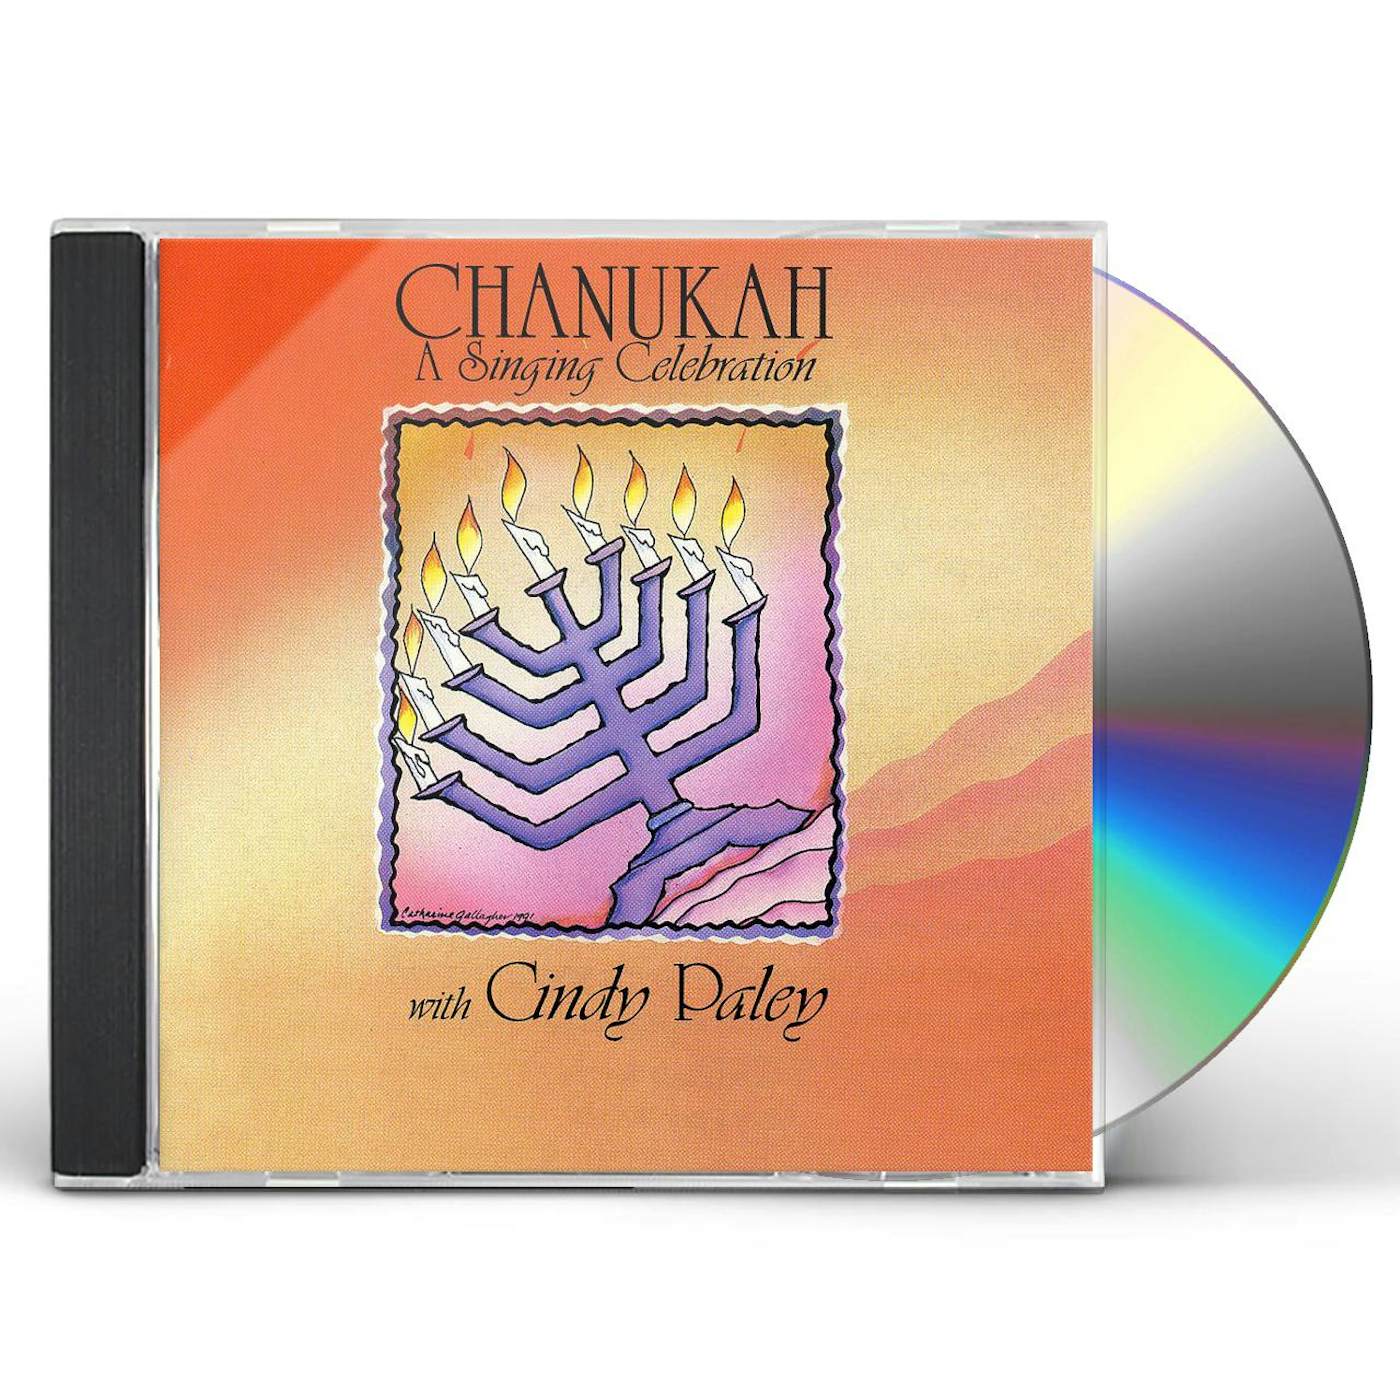 Shalom Chaverim CD